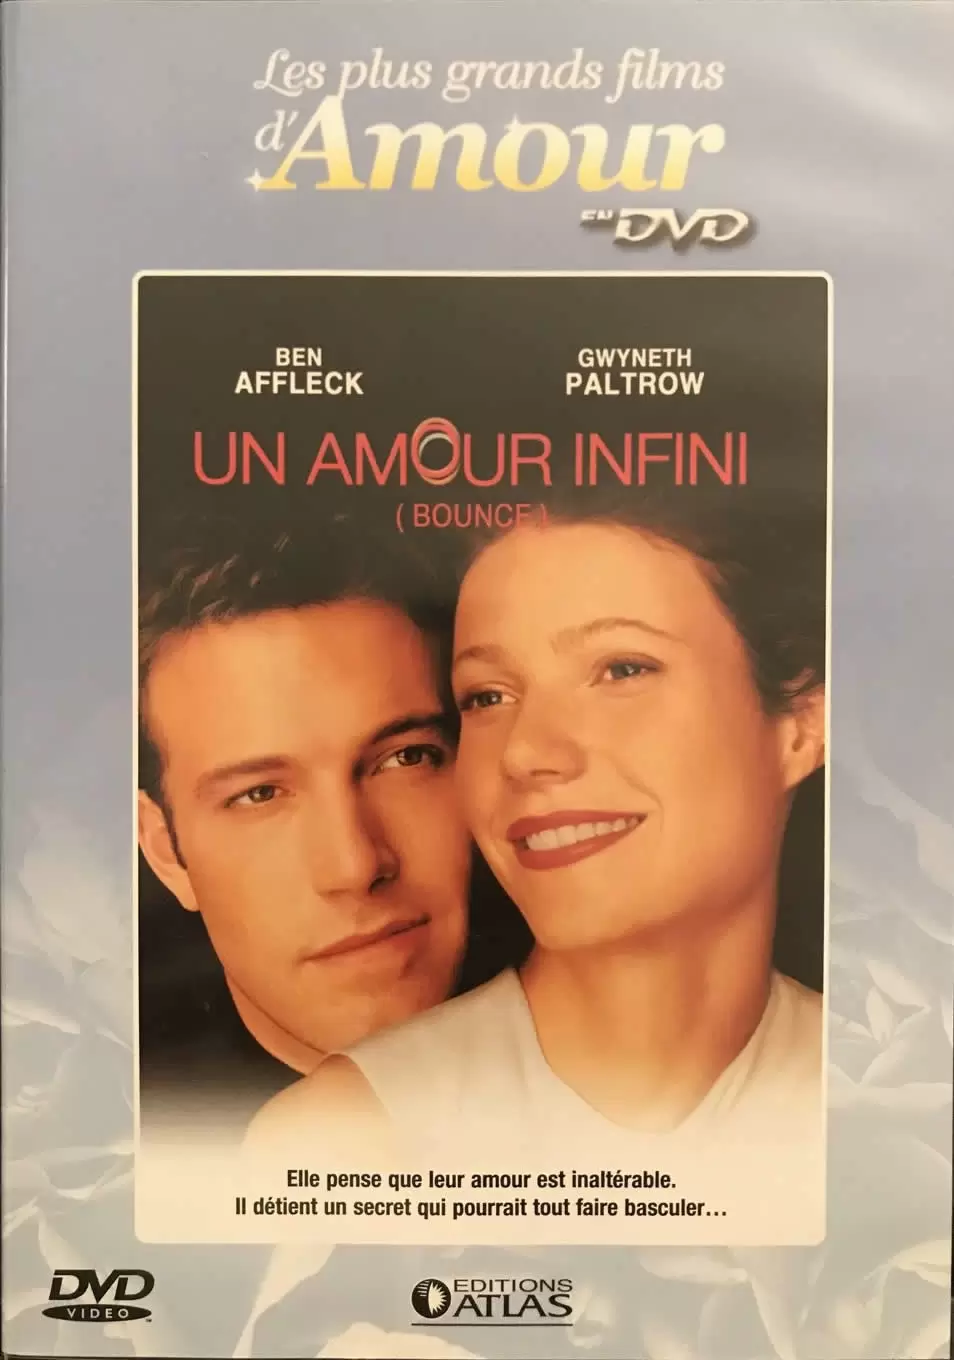 Les plus grands films d\'amour en DVD - Un amour infini